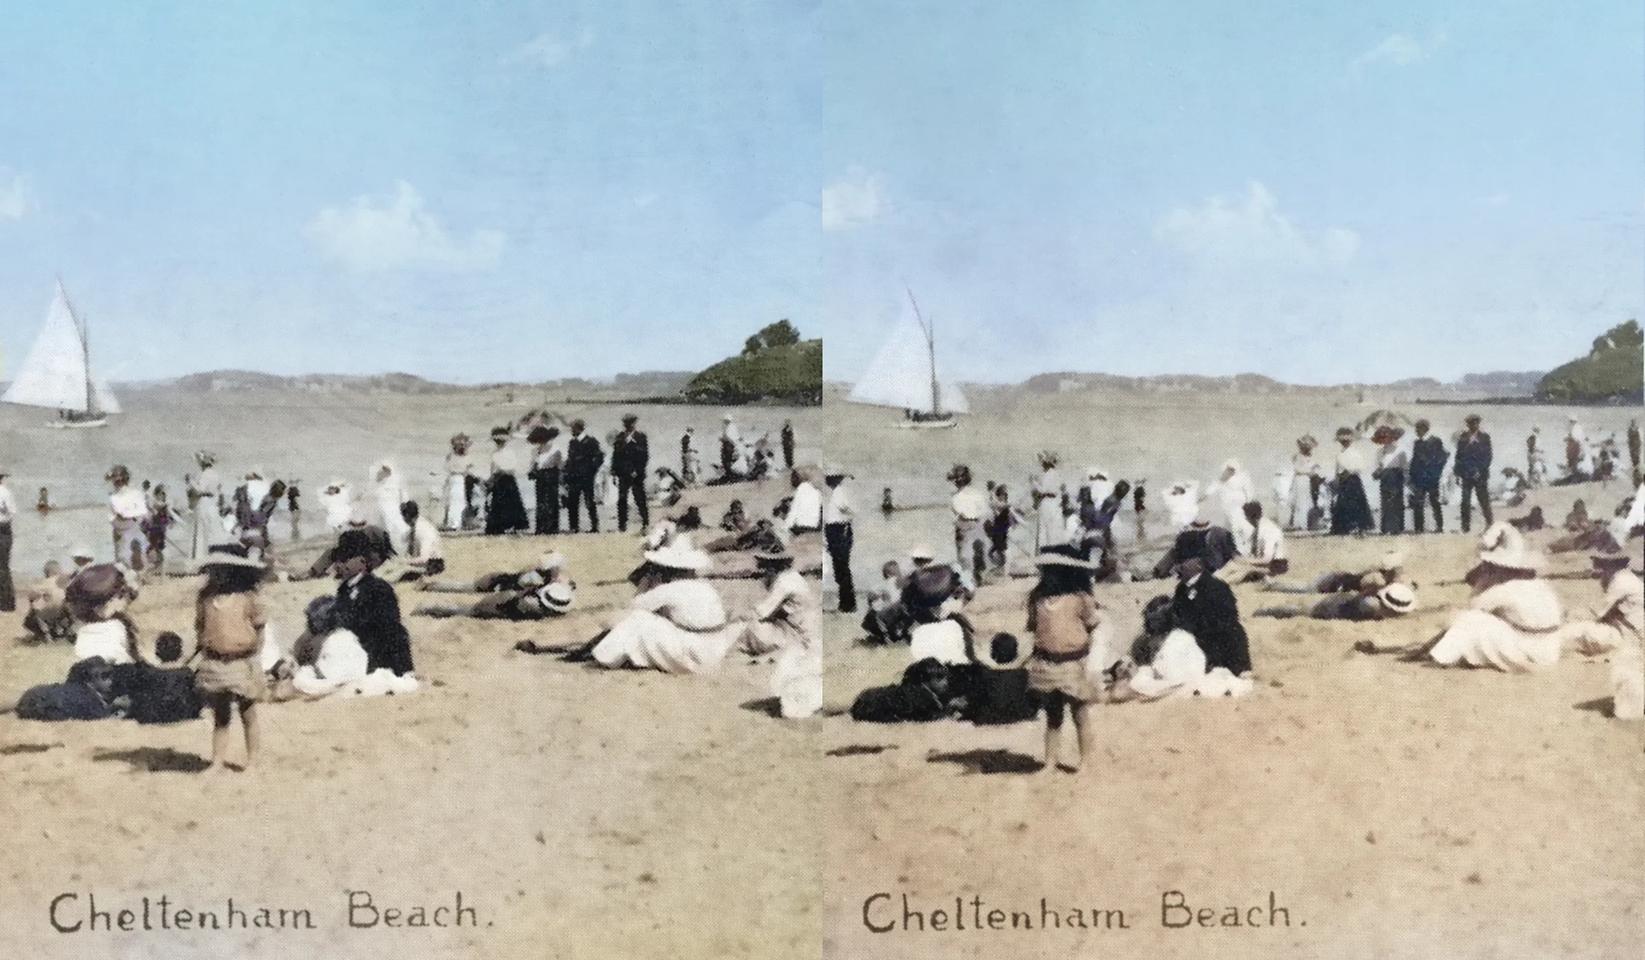 Cheltenham beach